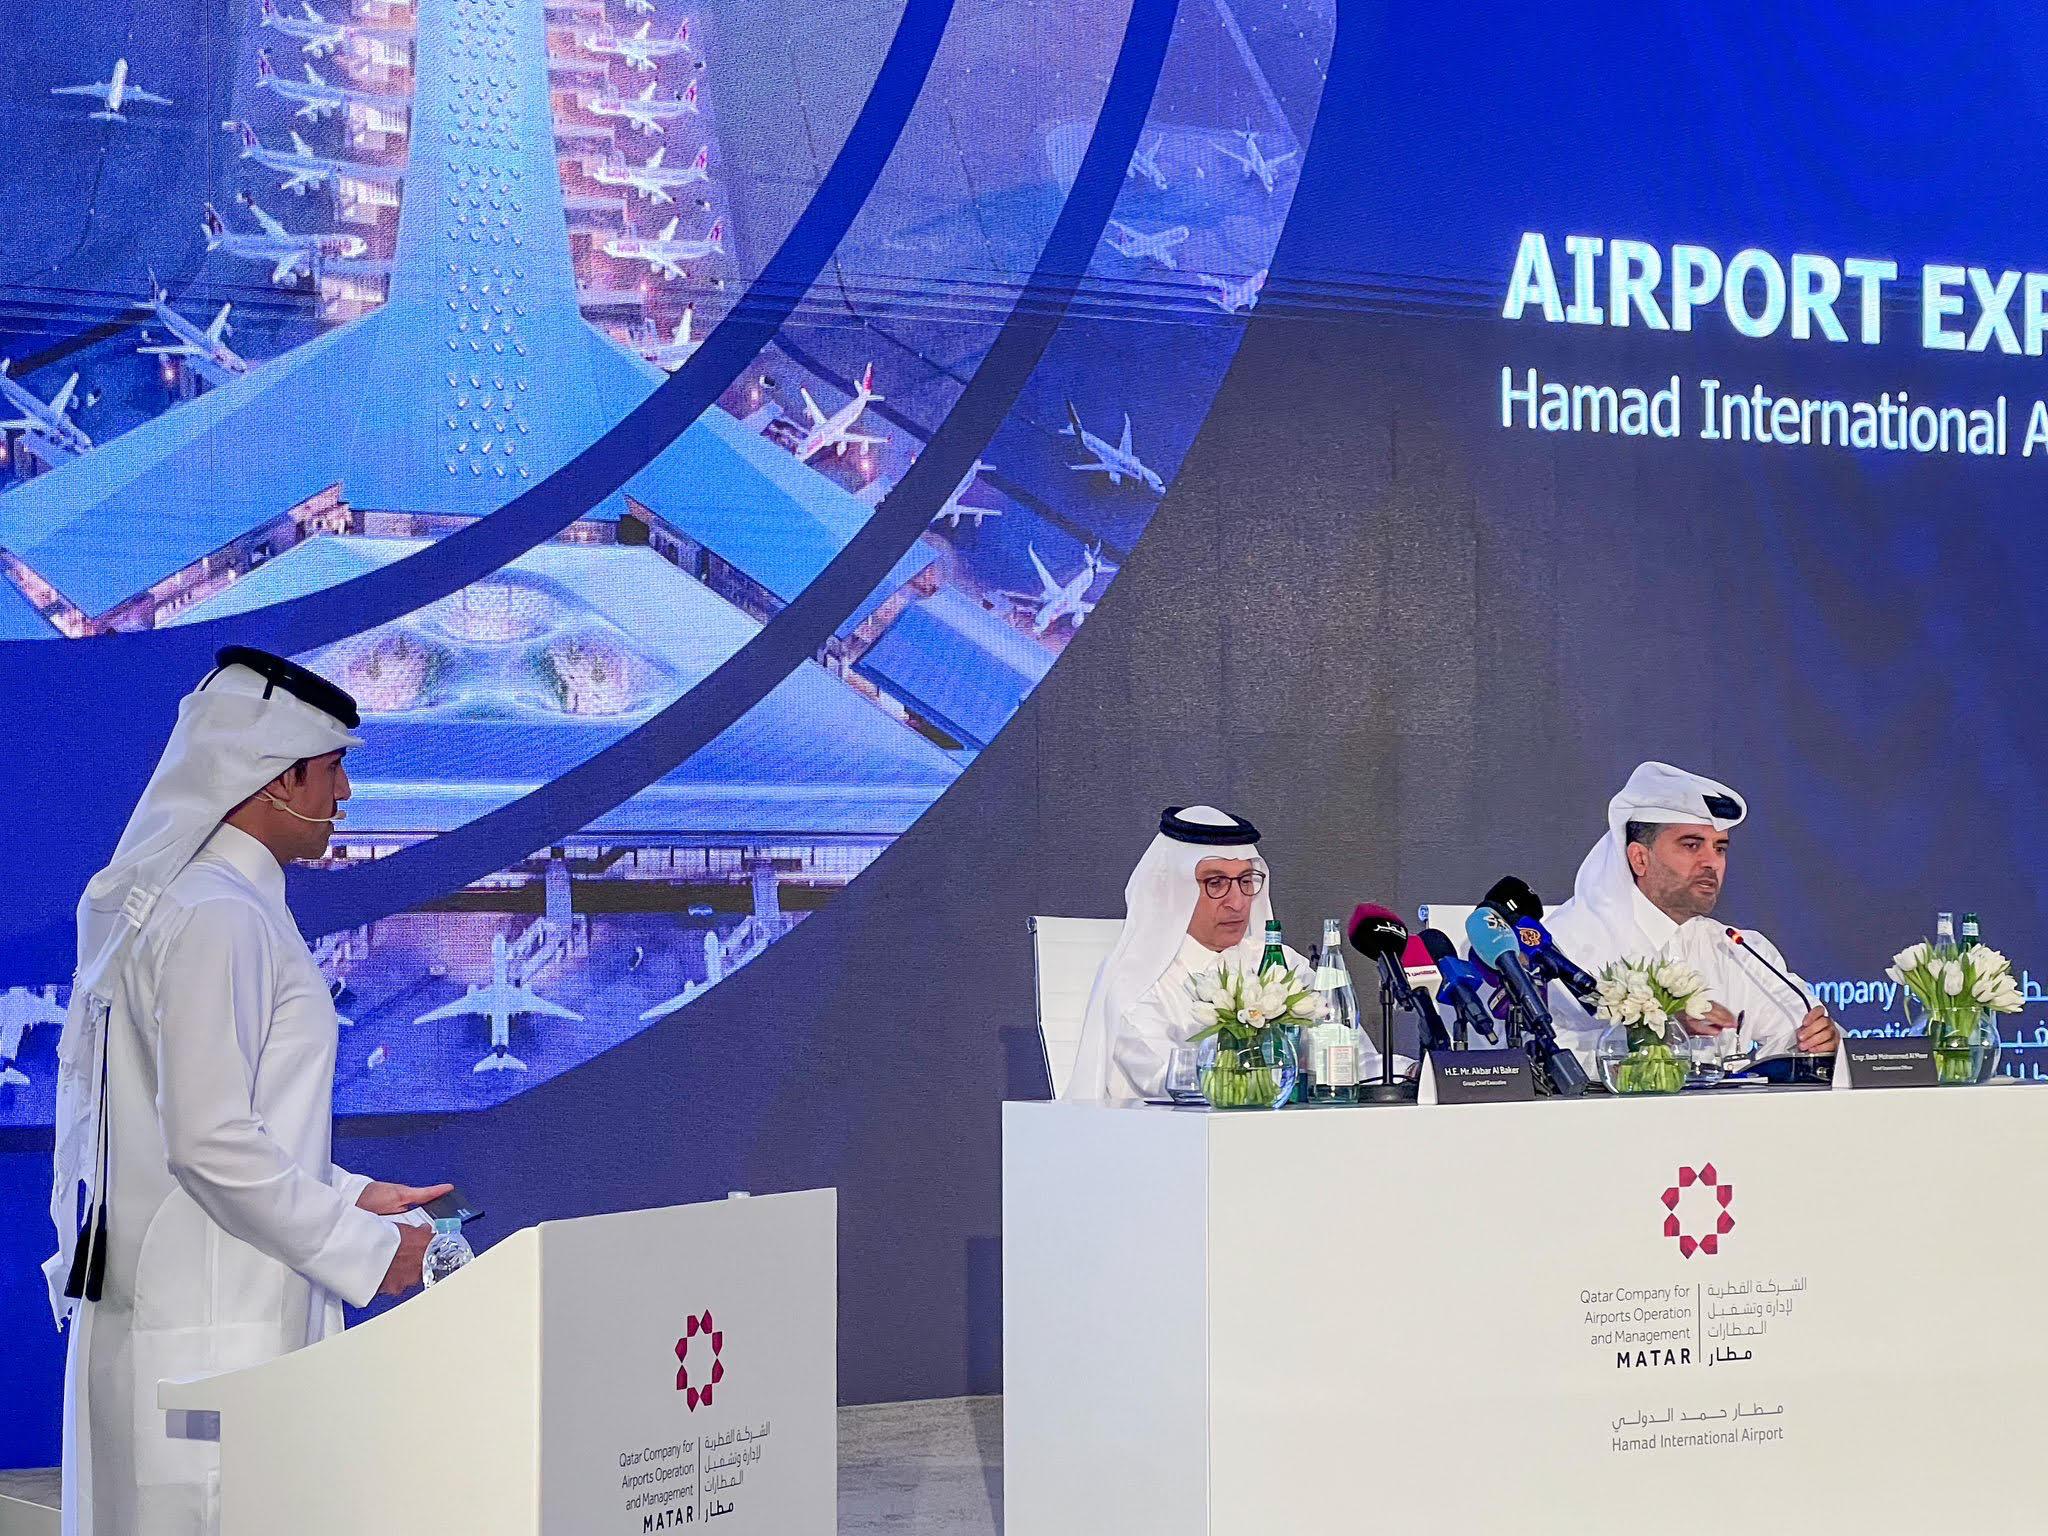  رئيس الوزراء القطرة يفتتح توسعه مطار حمد الدولى   زيادة السعة الاستيعابية إلى 58 مليون مسافر سنوياً.	